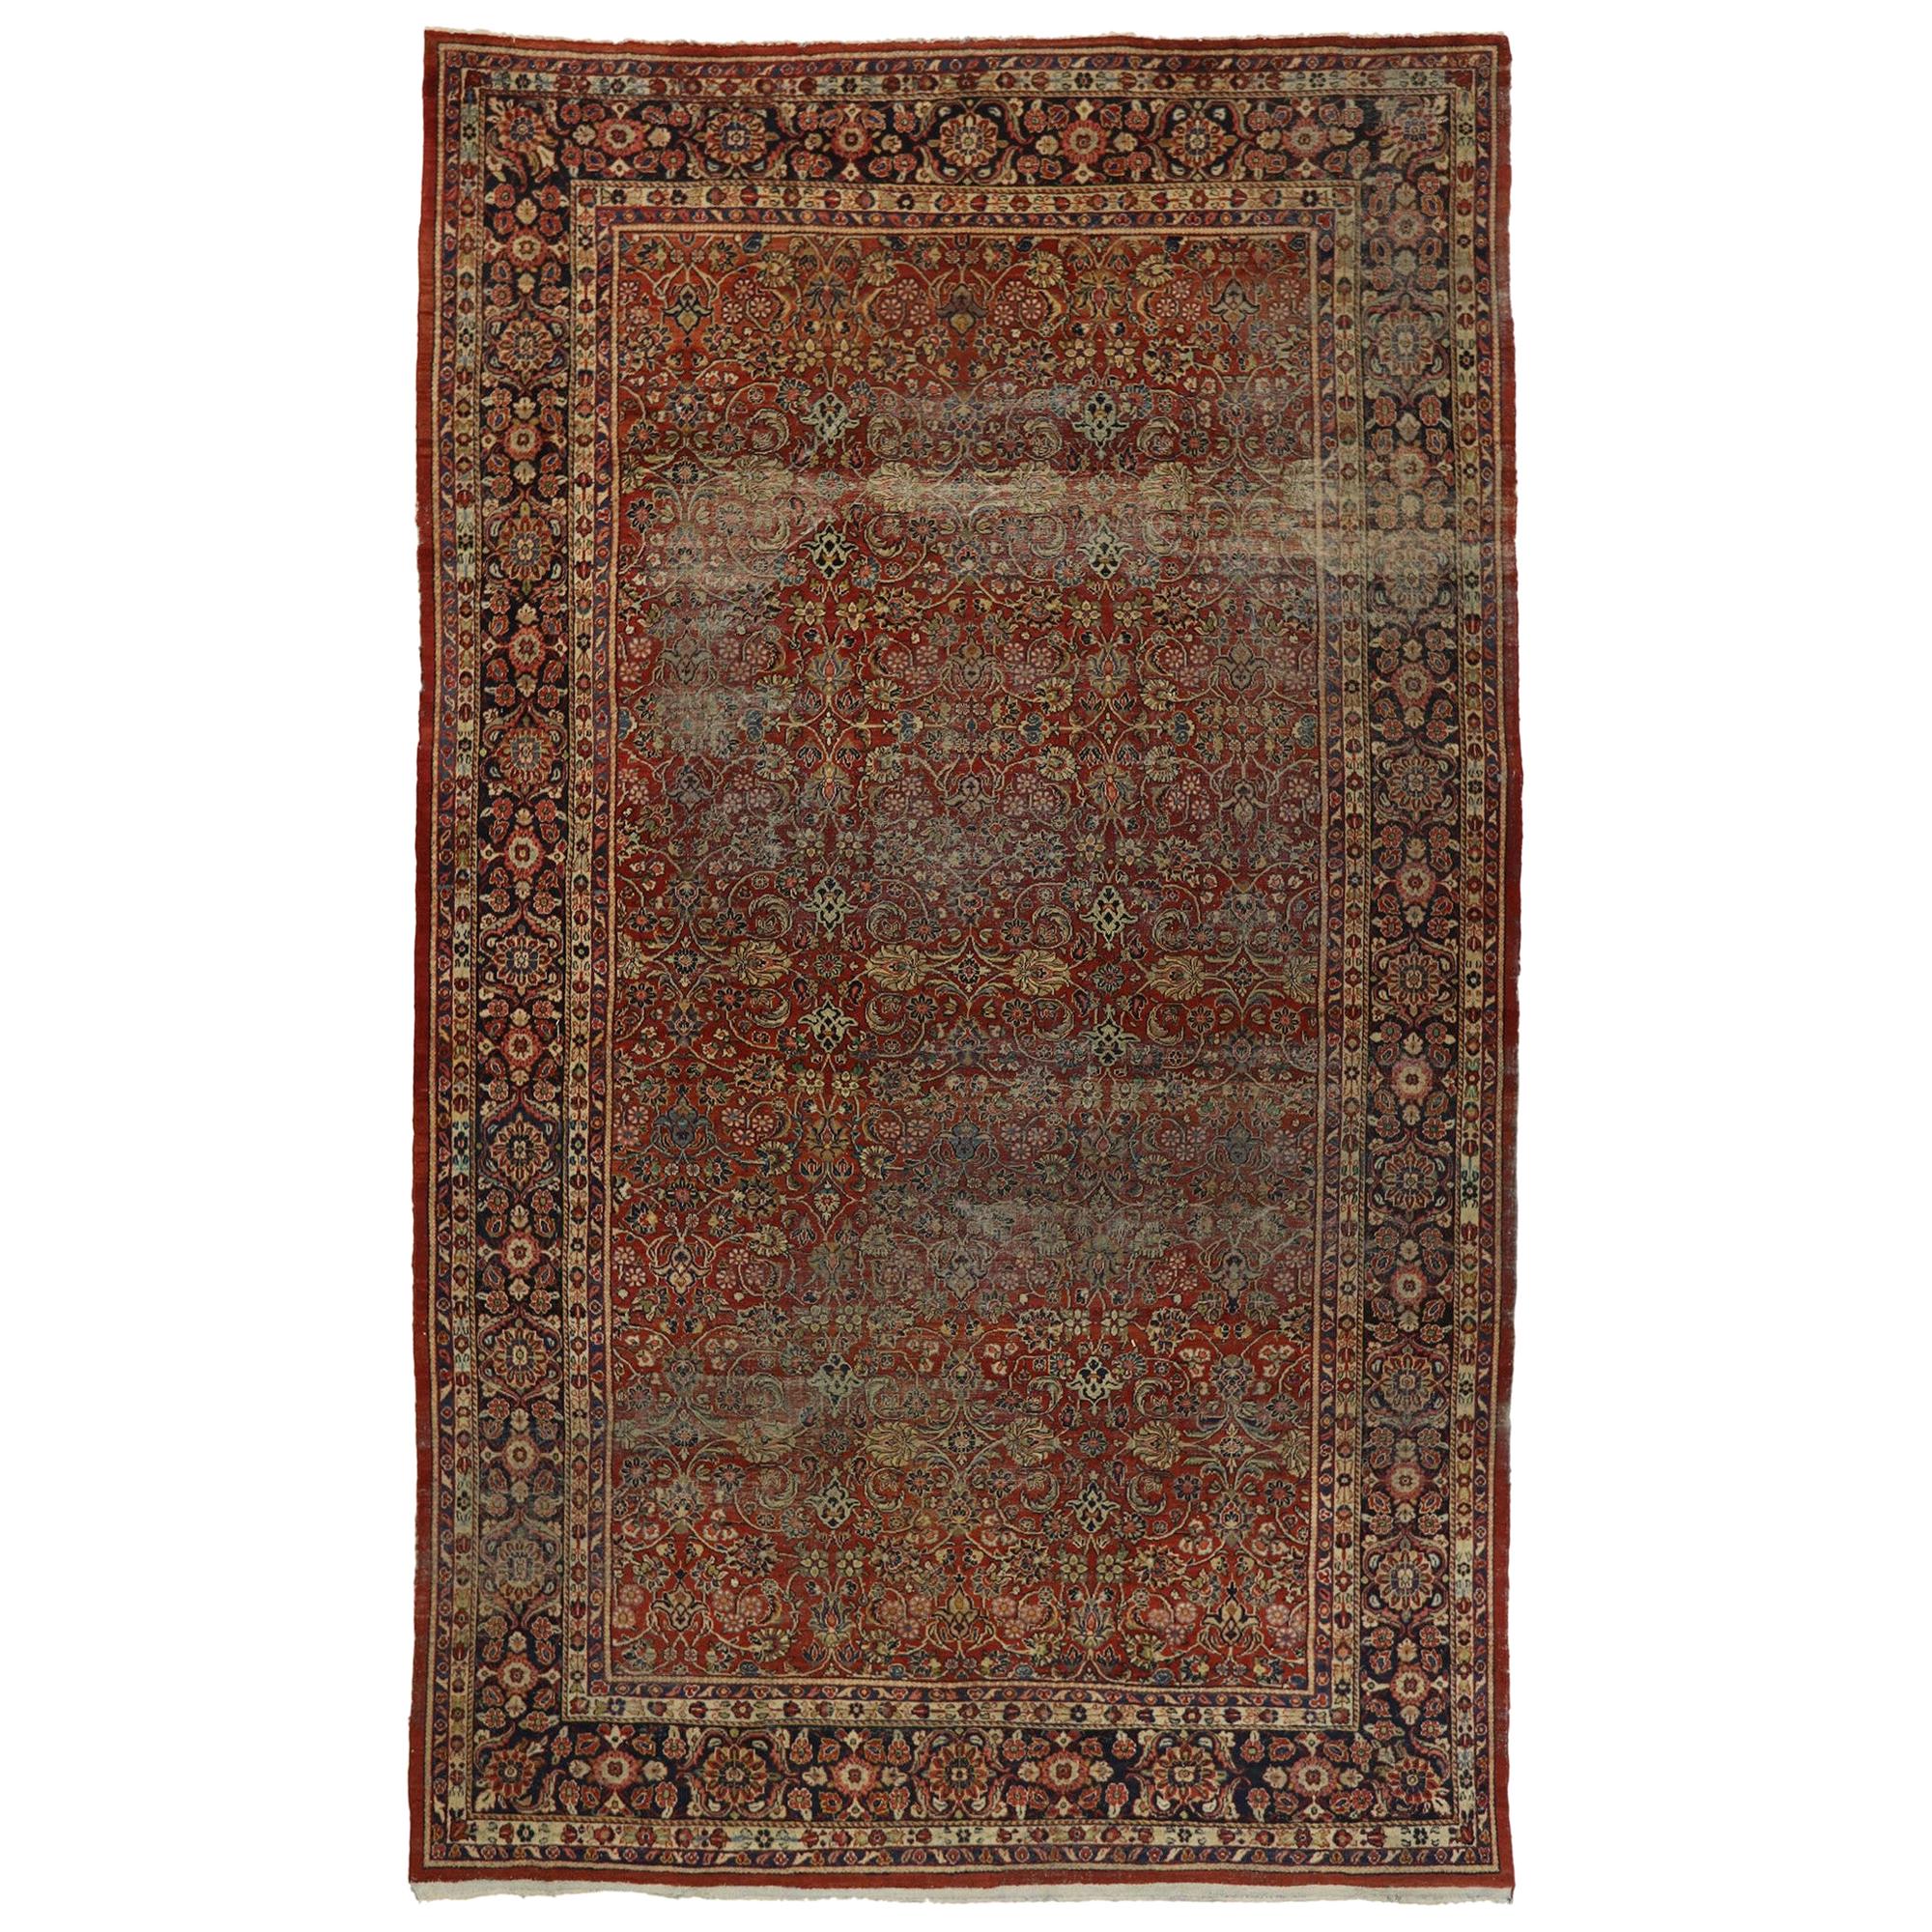 Antiker persischer Mahal-Teppich im modernen, rustikalen englischen Stil, im Used-Stil